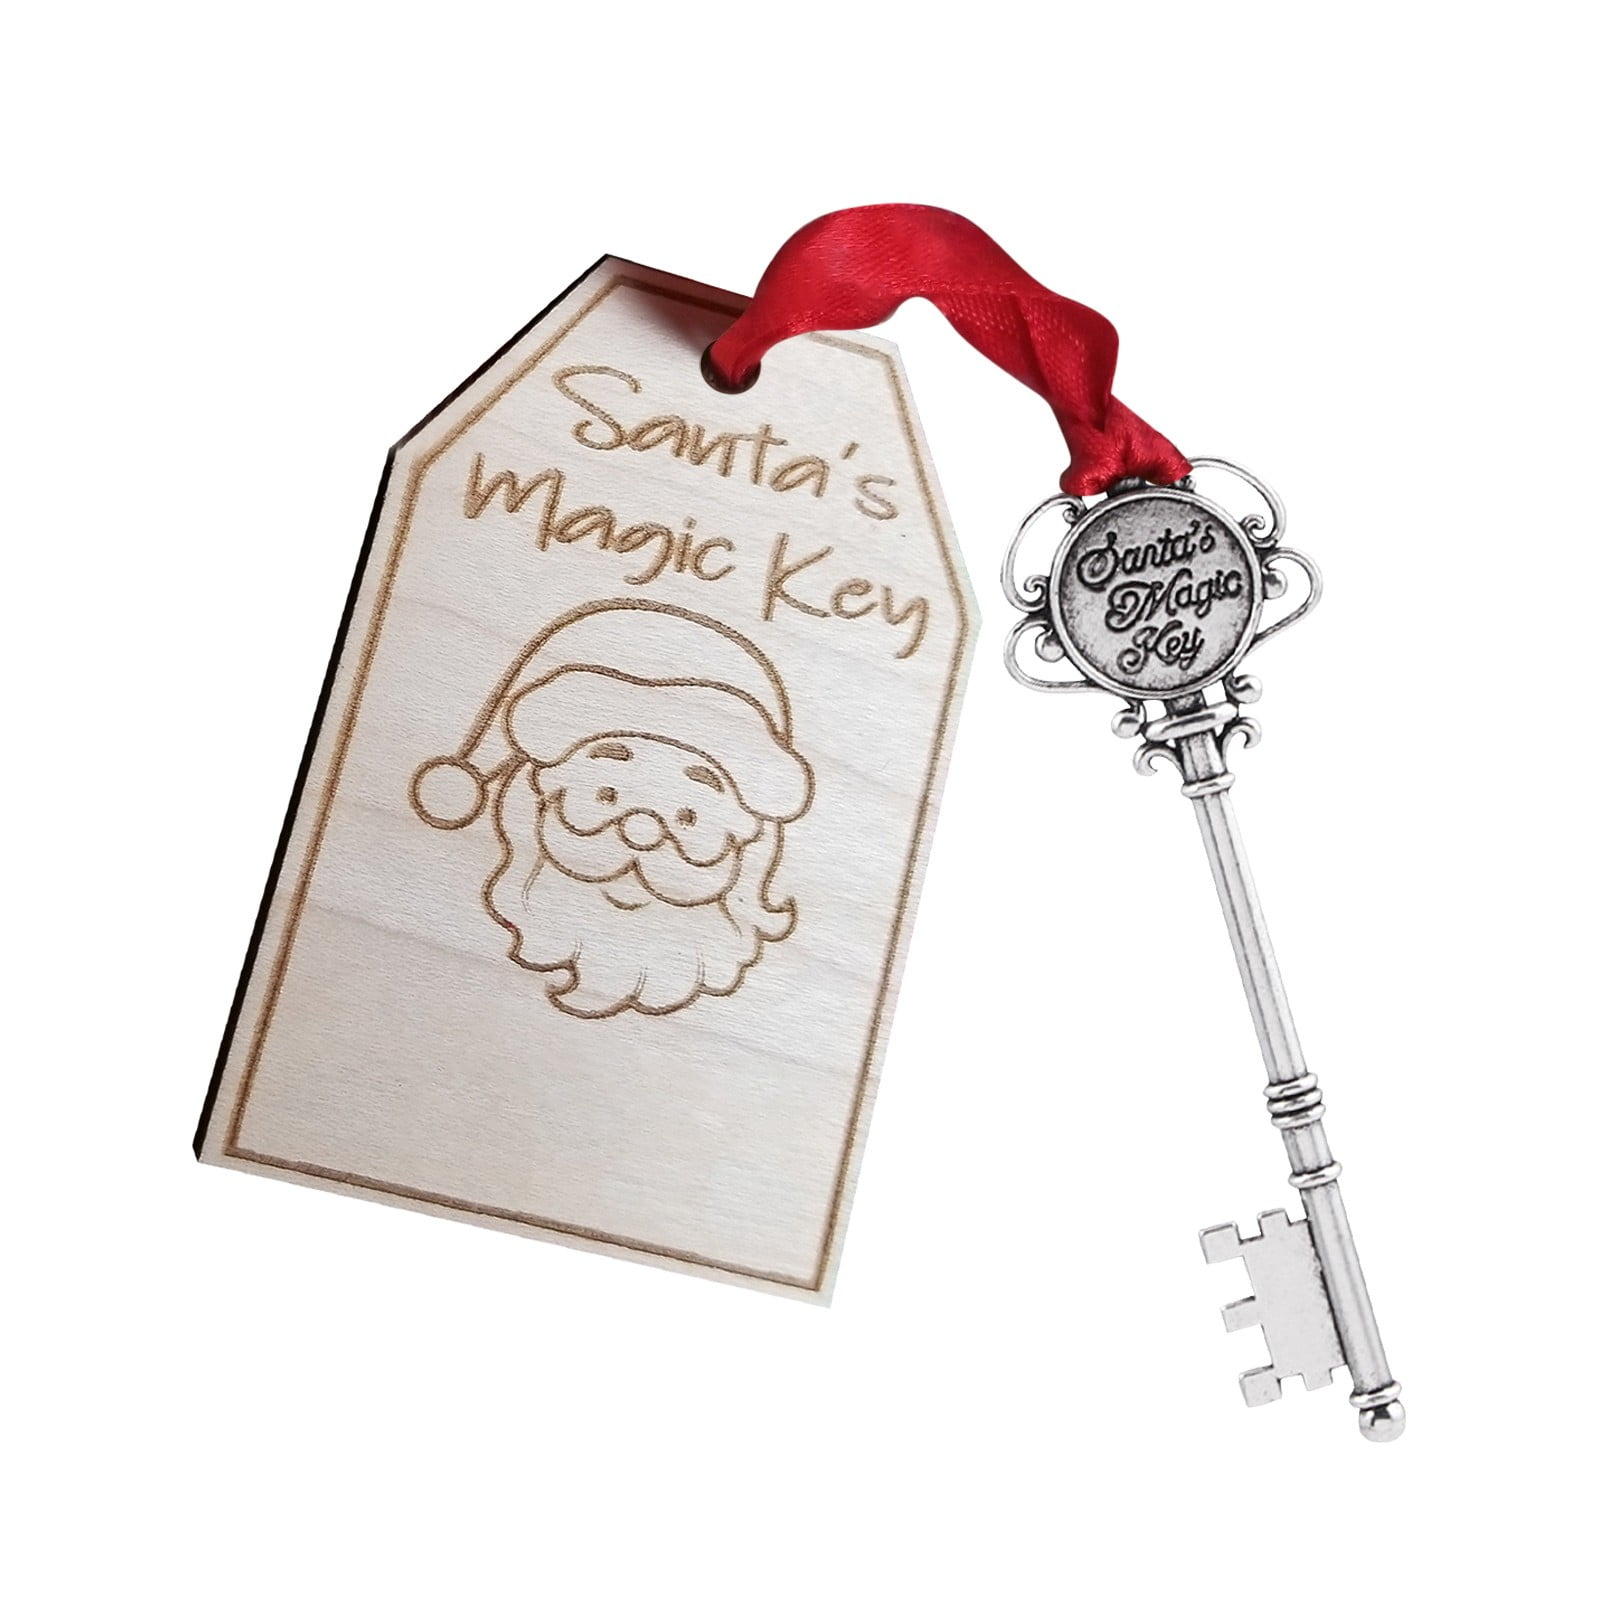 A Magic Chimney Key for Santa Claus Ornament by Ganz